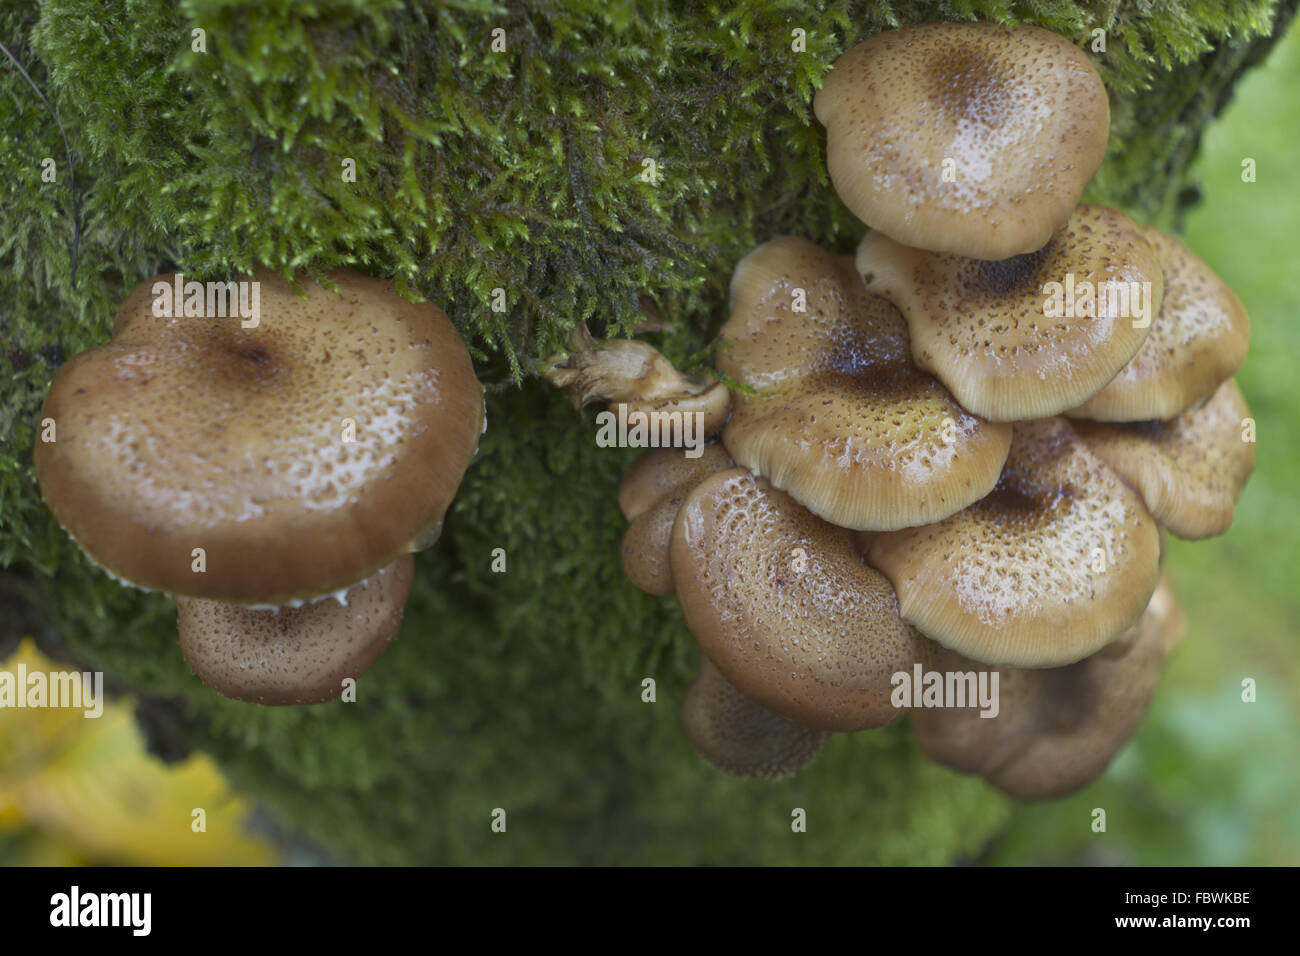 honey mushroom Stock Photo